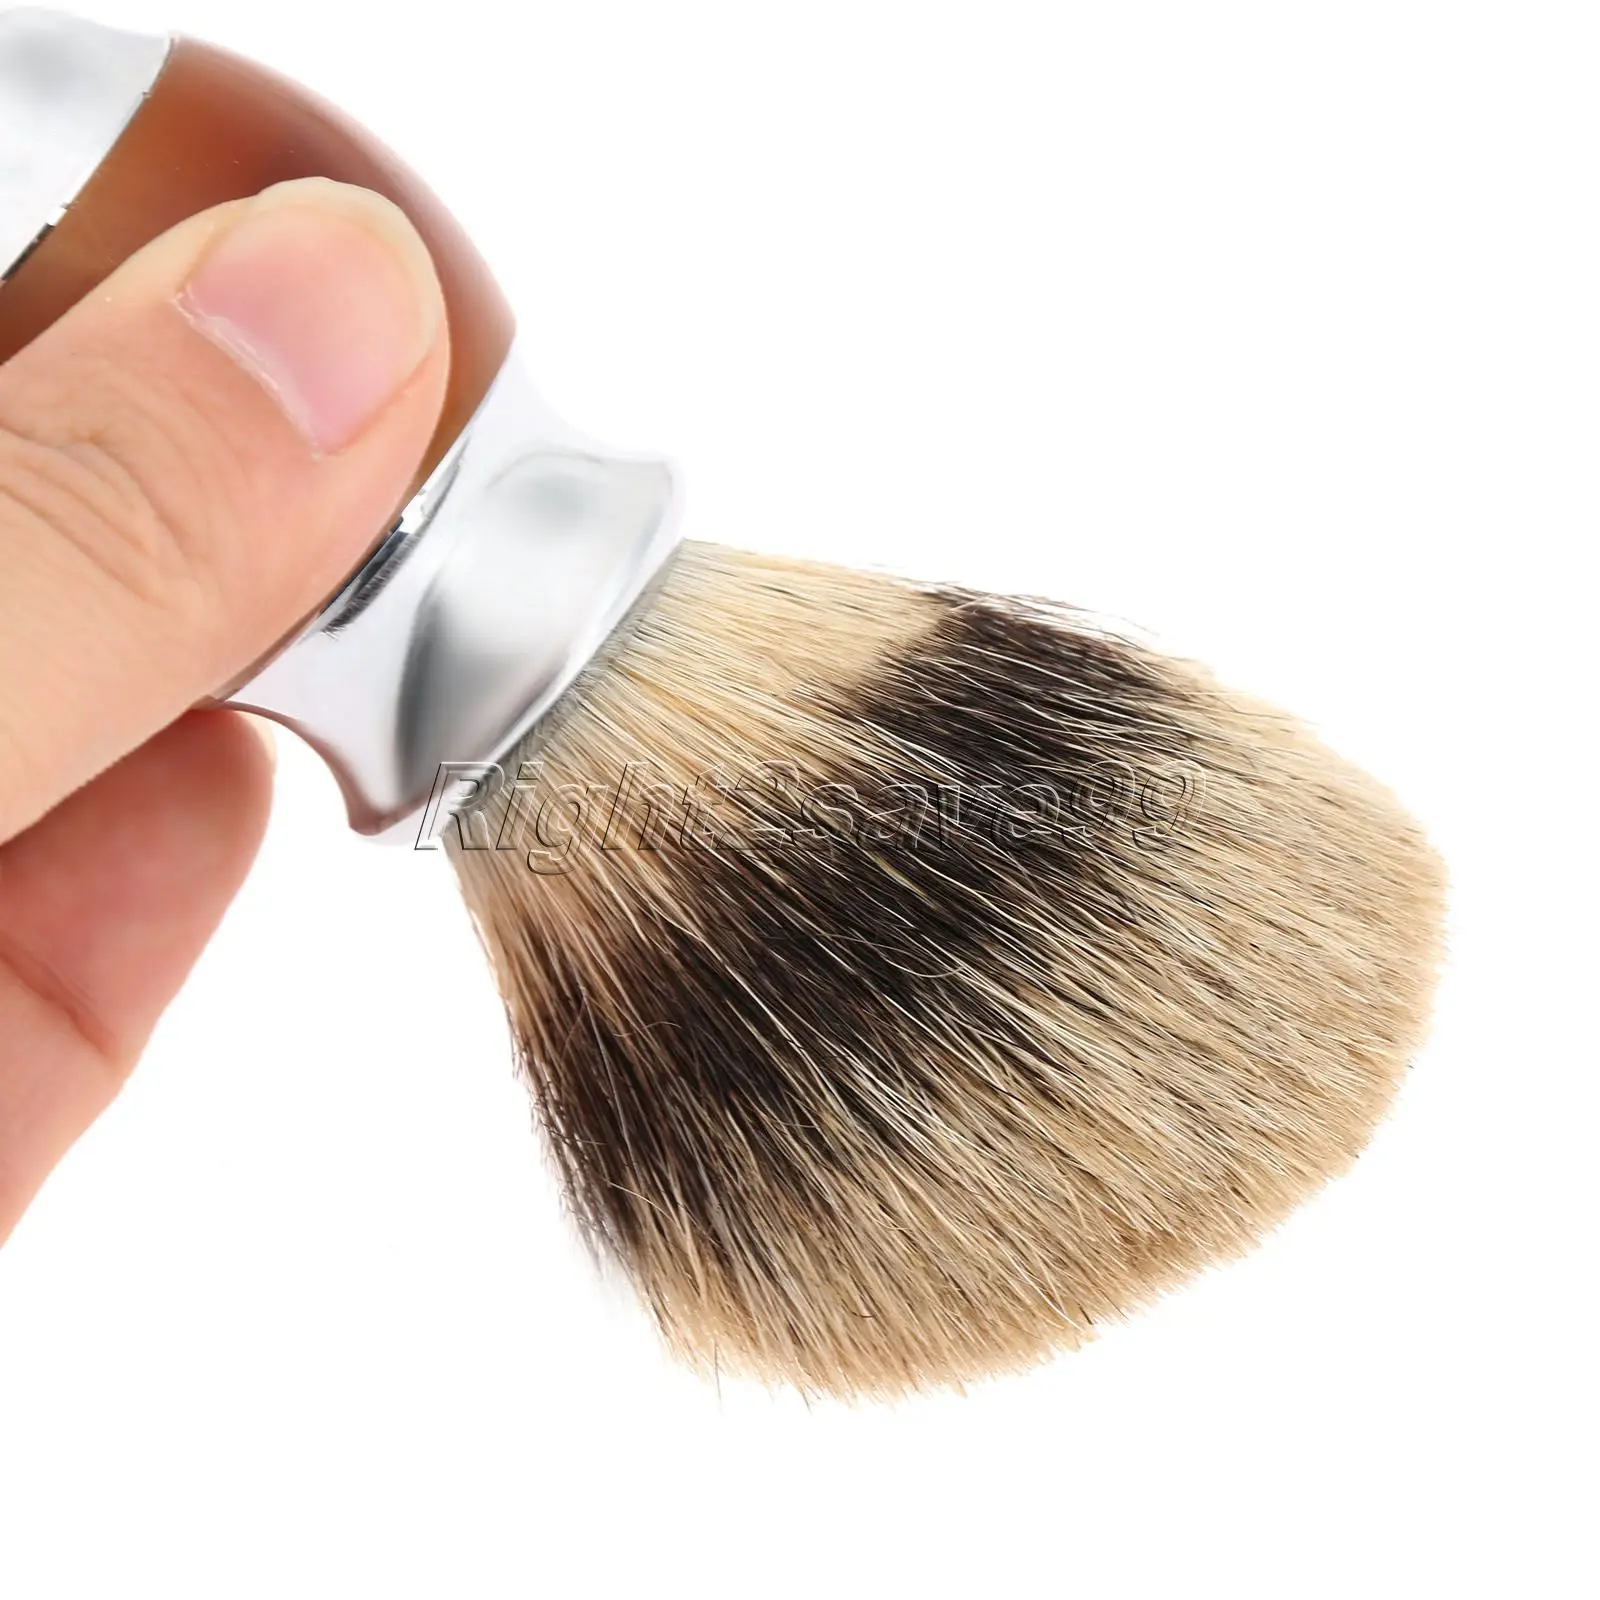 Высокое качество из Натурального Волоса барсука кисточки для бритья ручкой смолы Парикмахерская Для мужчин лицо, борода кисточки Pincel приспособление для бритья Красота инструмент